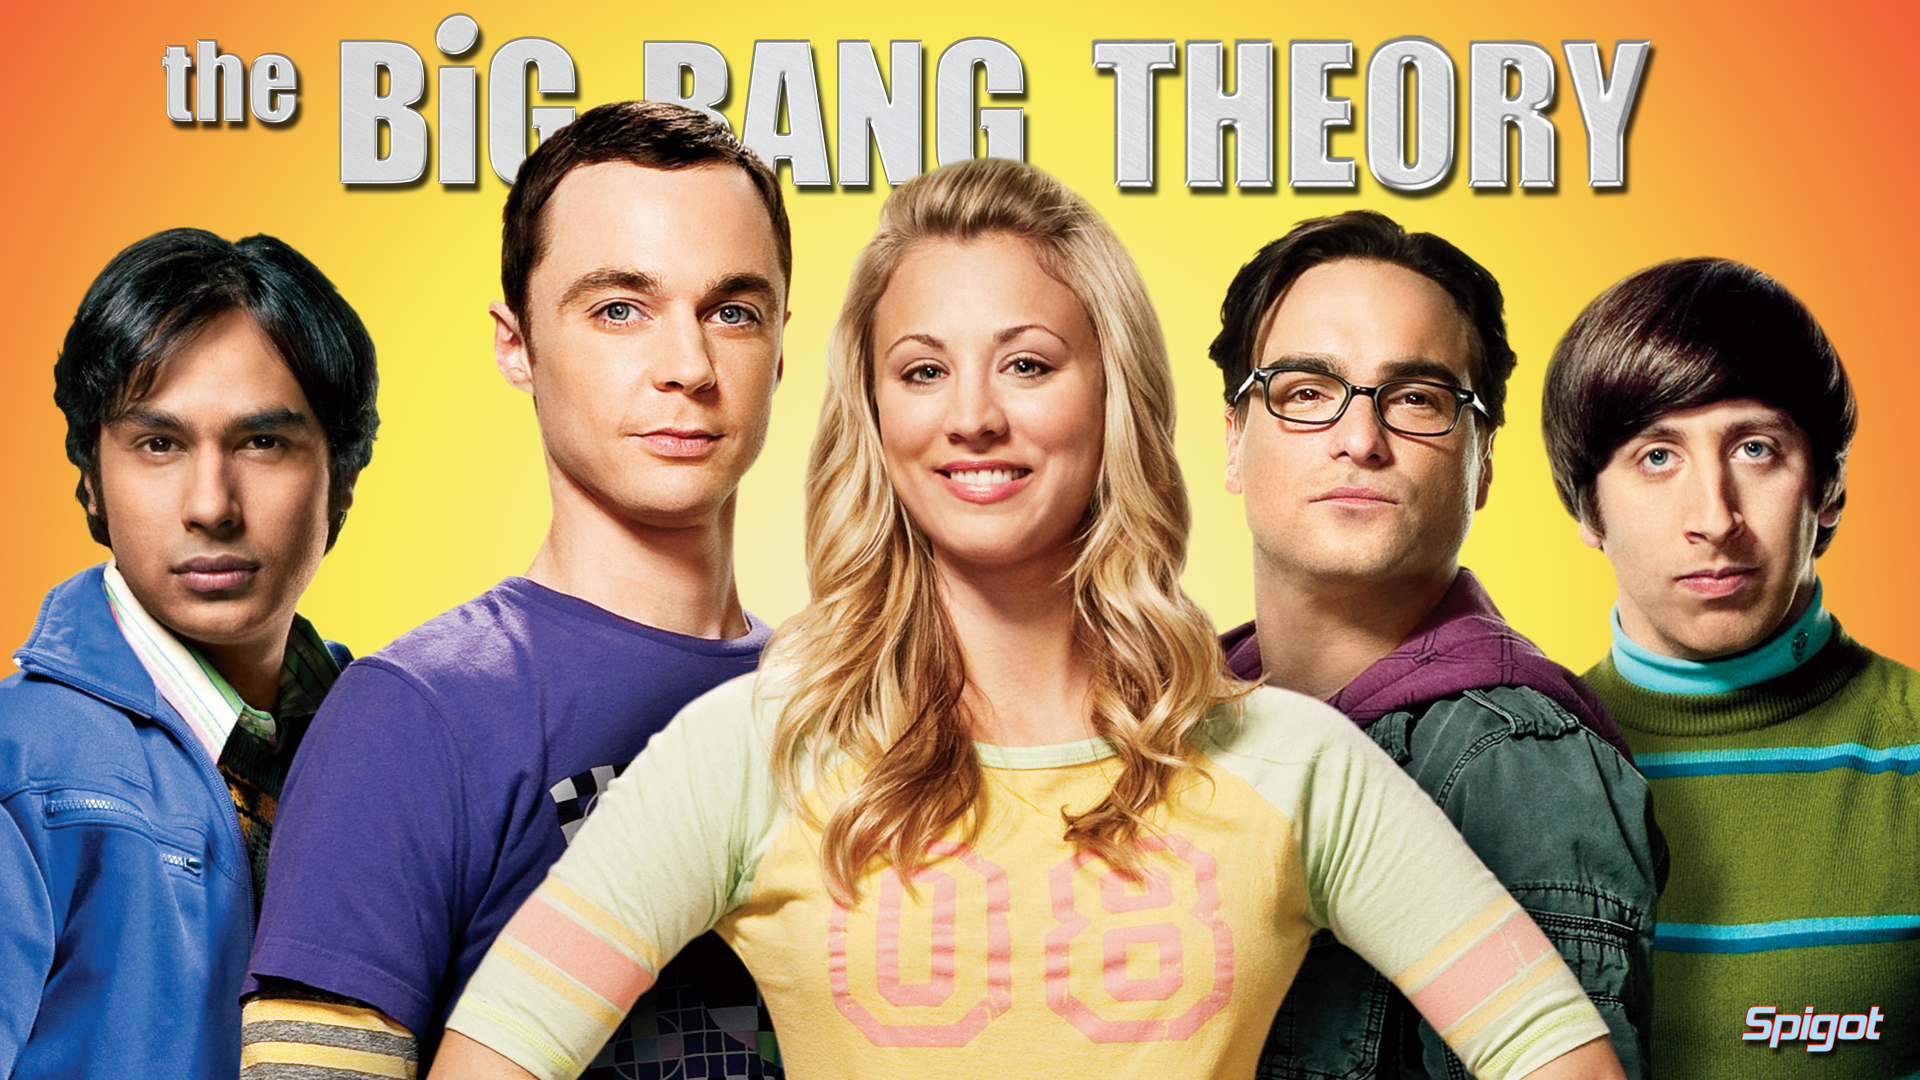 Big Bang Theory Wallpaper